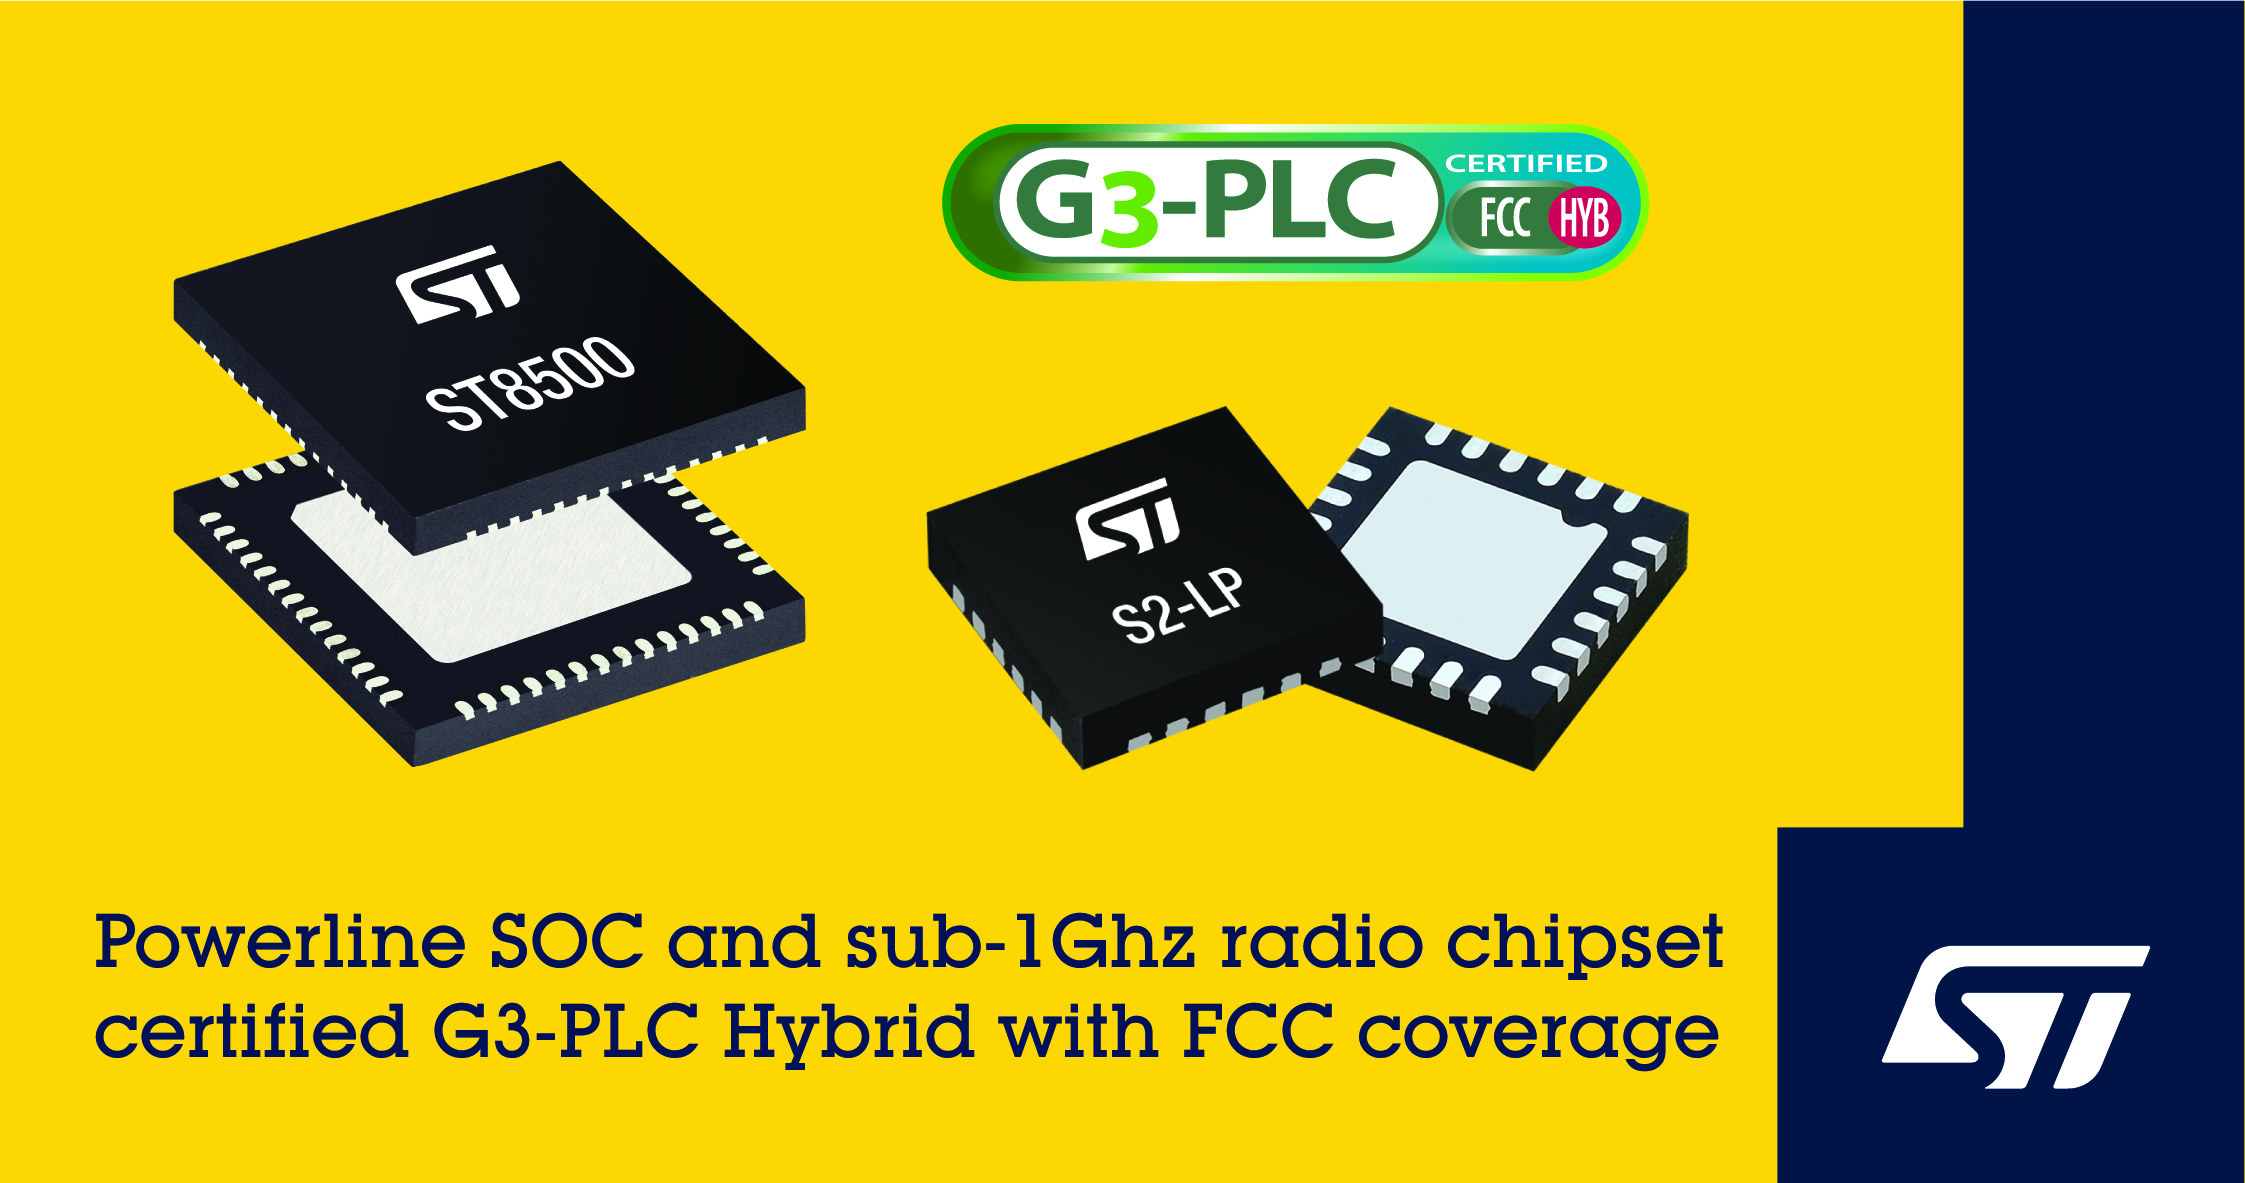 意法半导体扩大智能表计通信连接功能，G3-PLC Hybrid双模芯片组获FCC认证